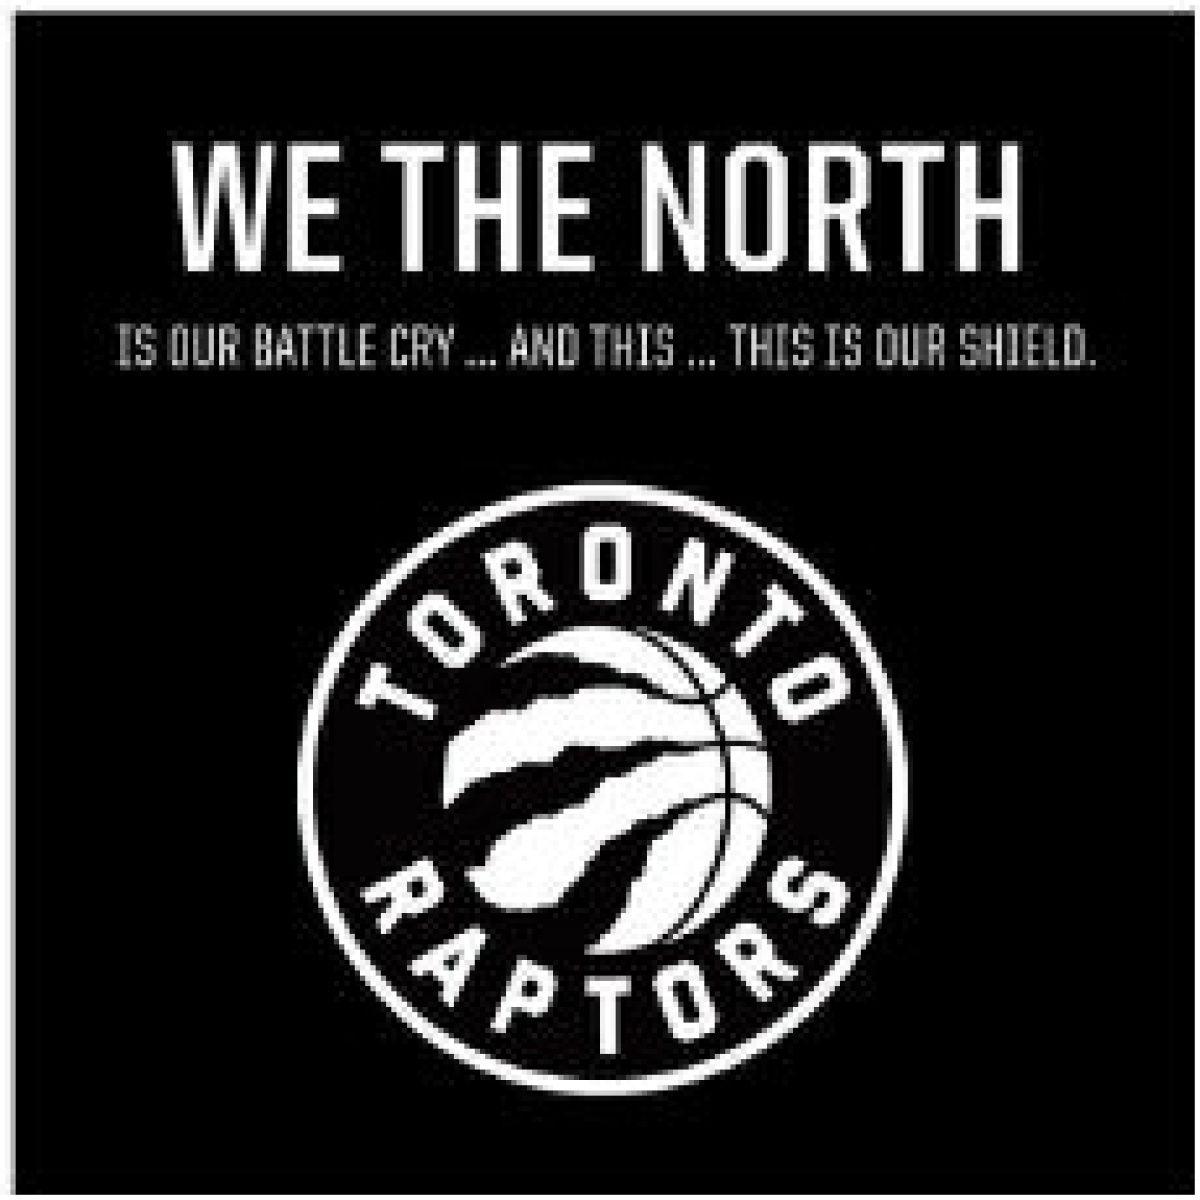 Toronto Raptors Logo - New Raptors logo gets a mixed verdict from fans